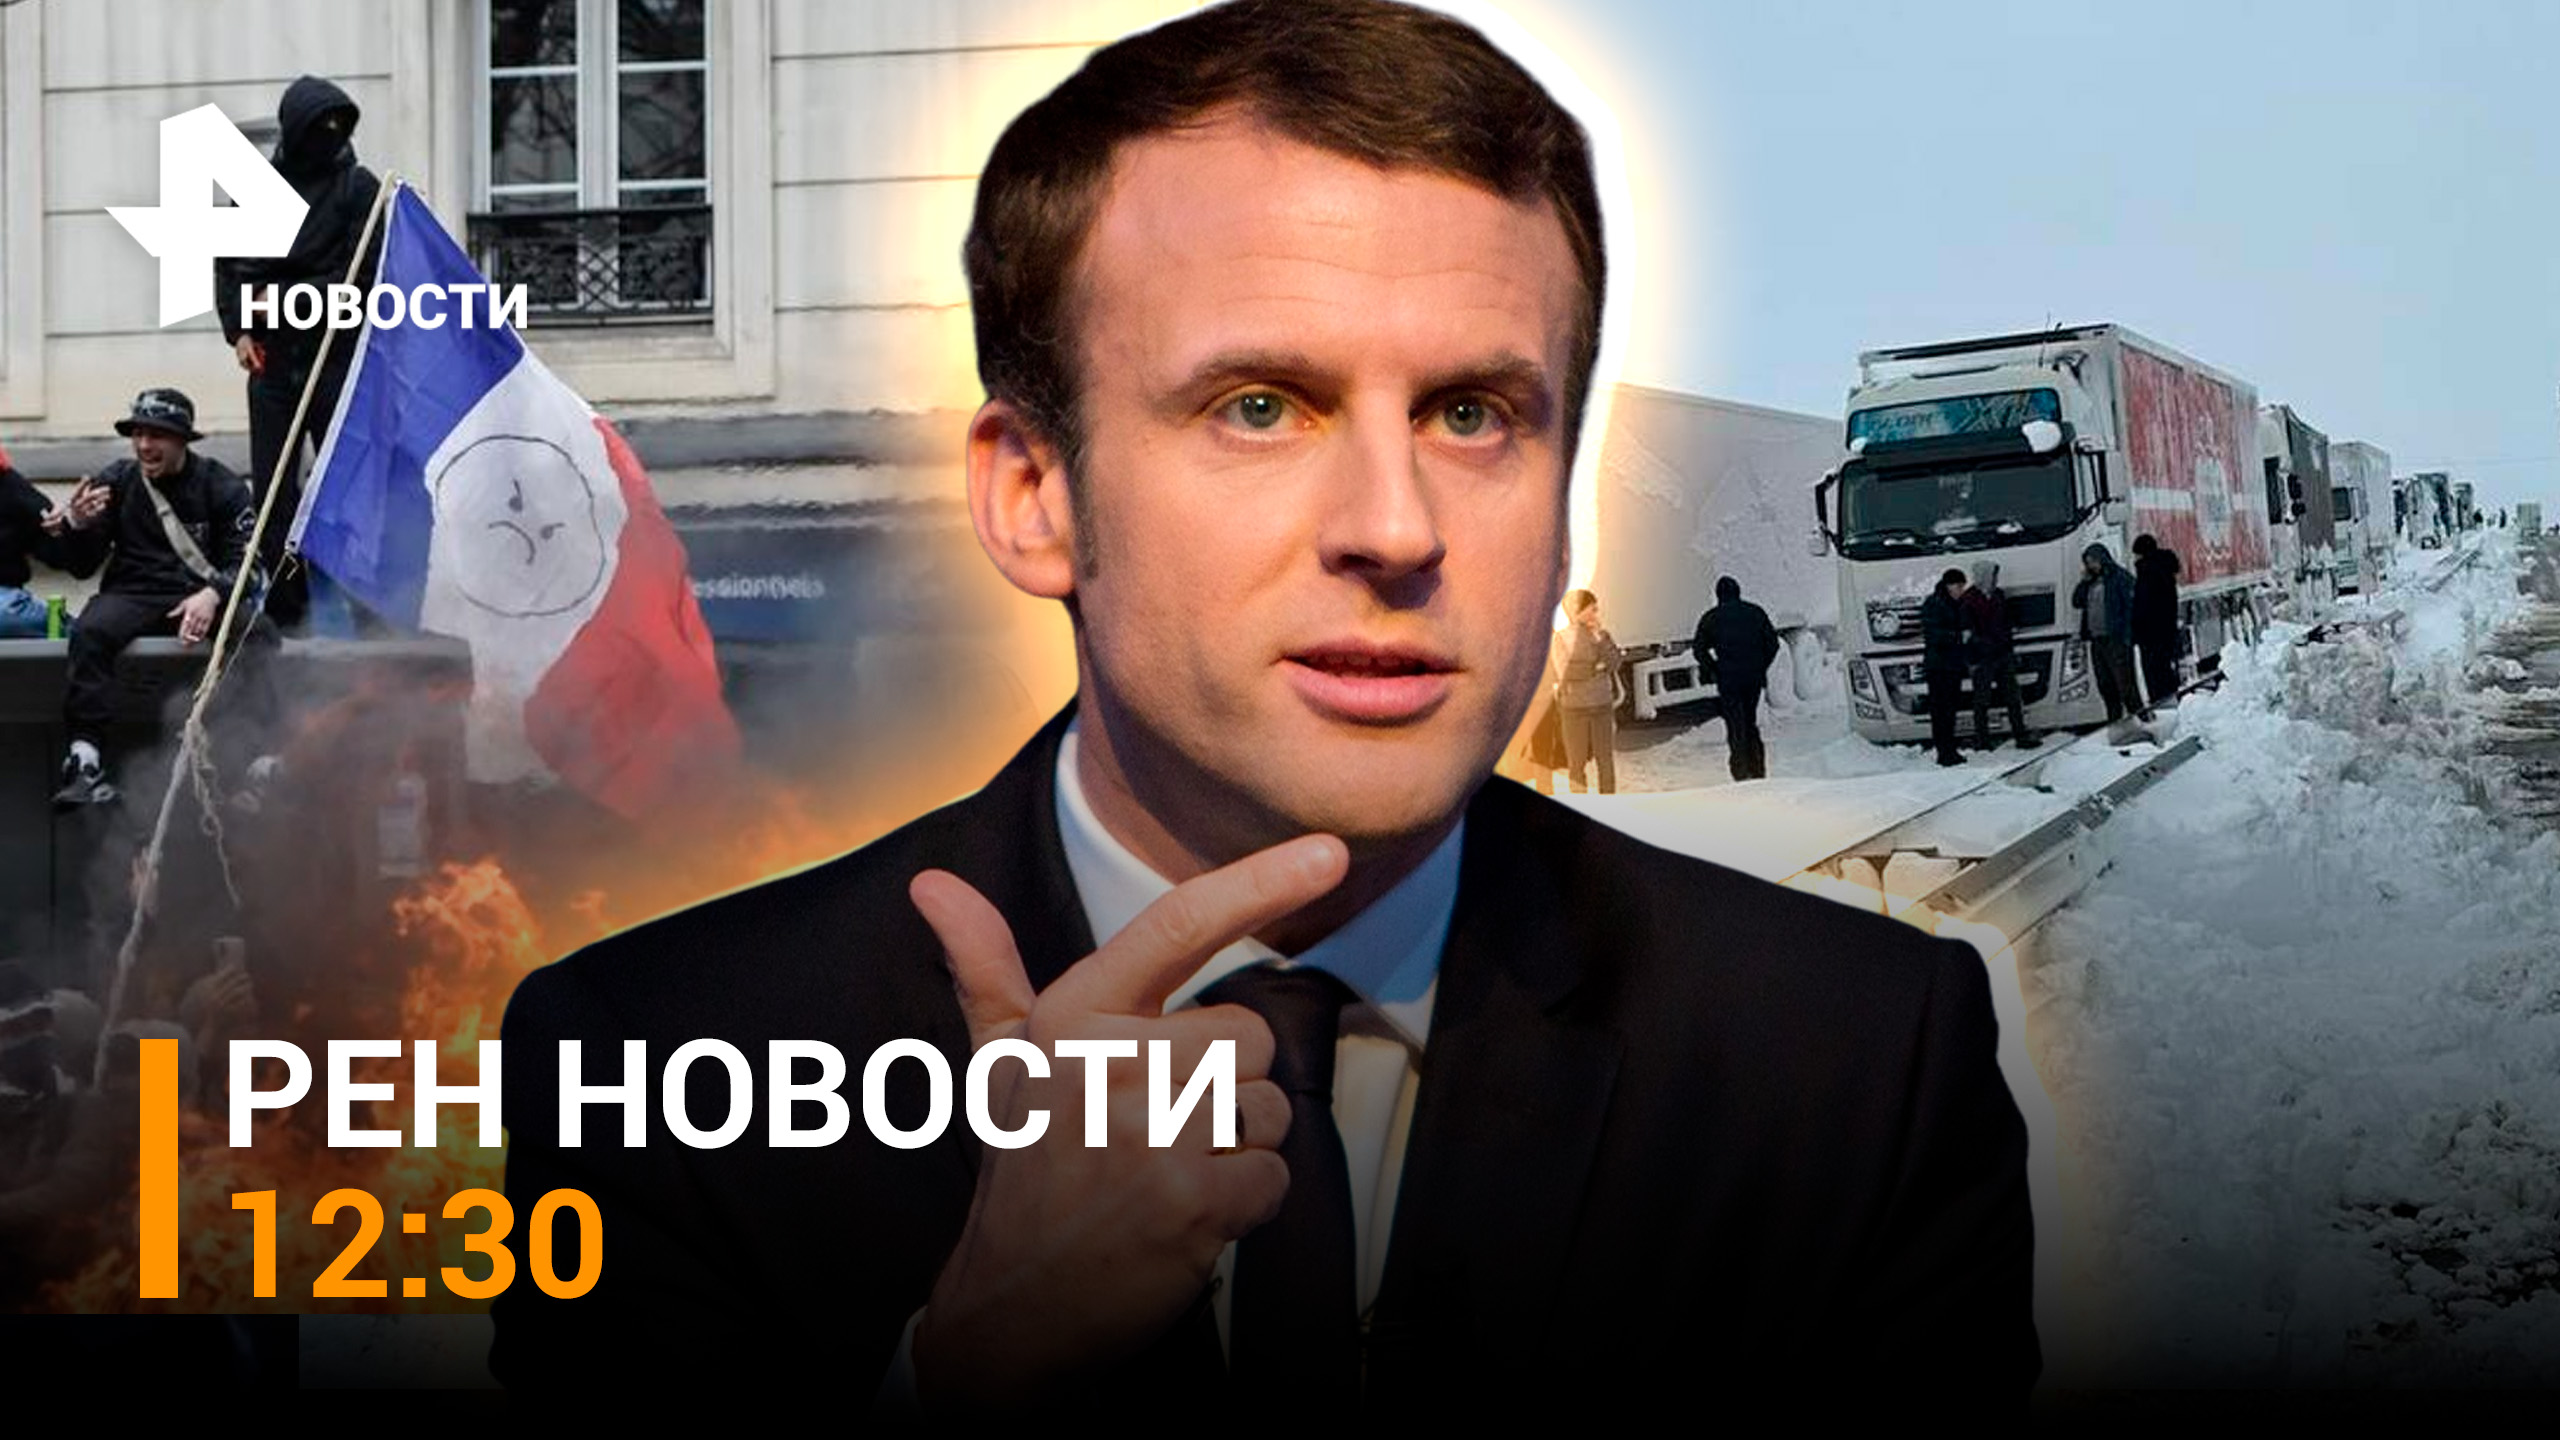 Люди замерзают в машинах в Ростовской области. Франция идет к банкротству / РЕН Новости 31.03, 12:30